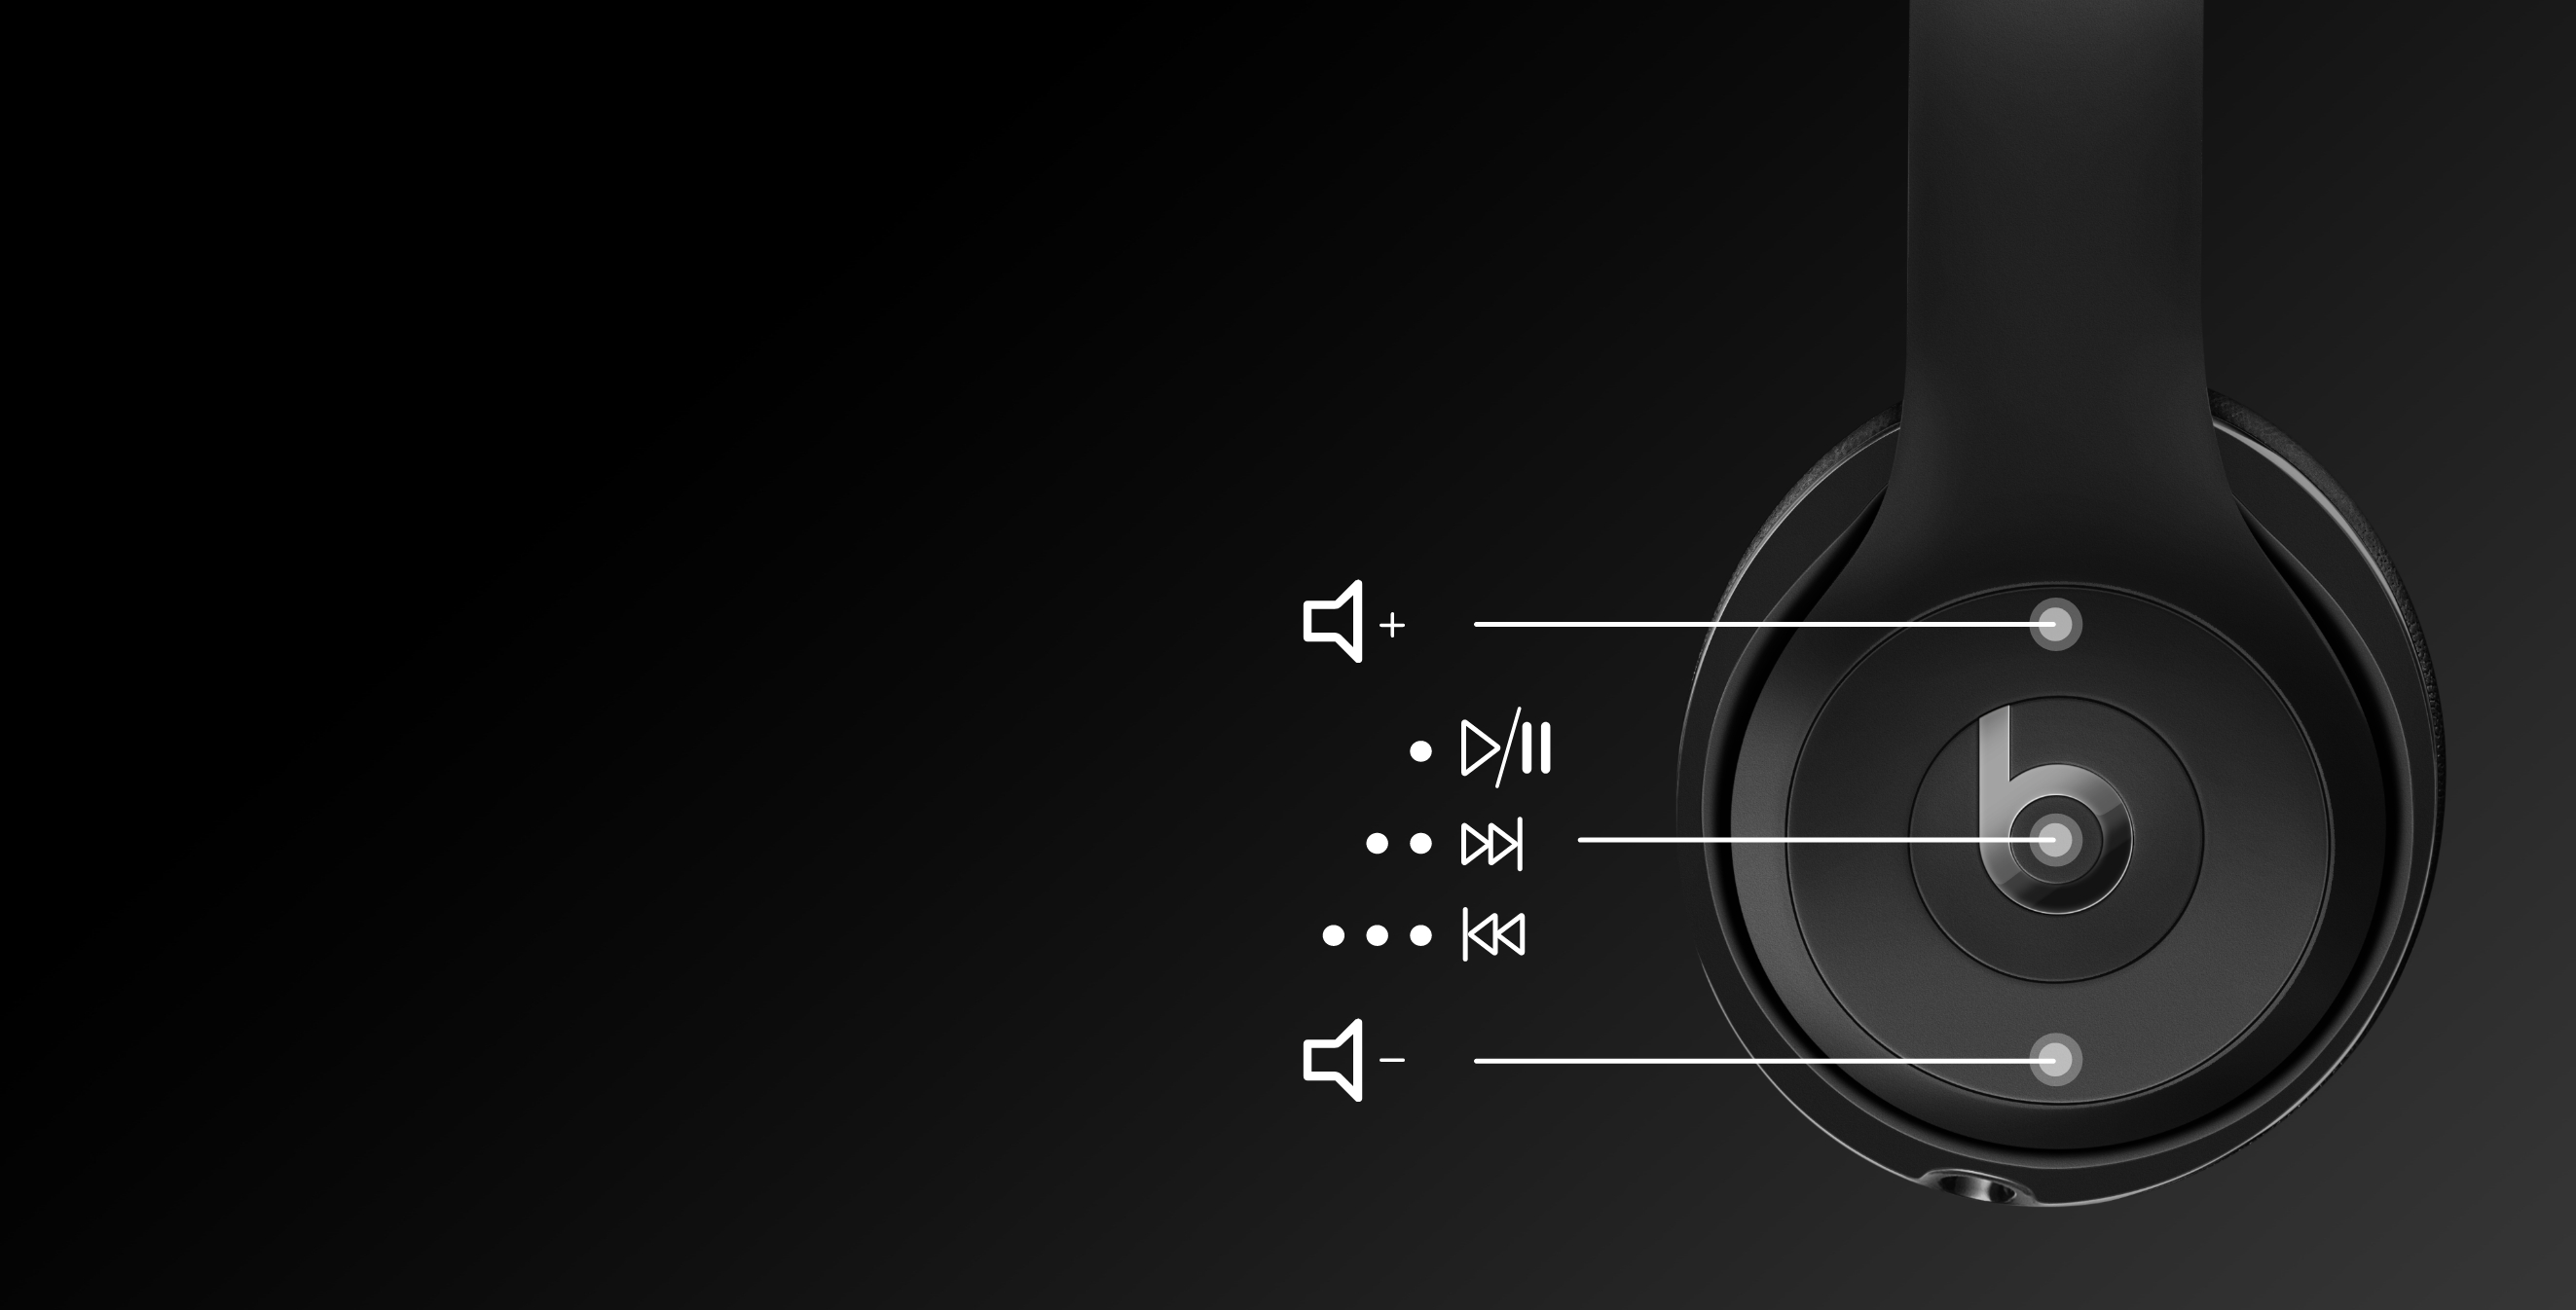 オーディオ機器 ヘッドフォン Solo³ Wireless - 毎日使えるワイヤレスオンイヤーヘッドフォン - Beats